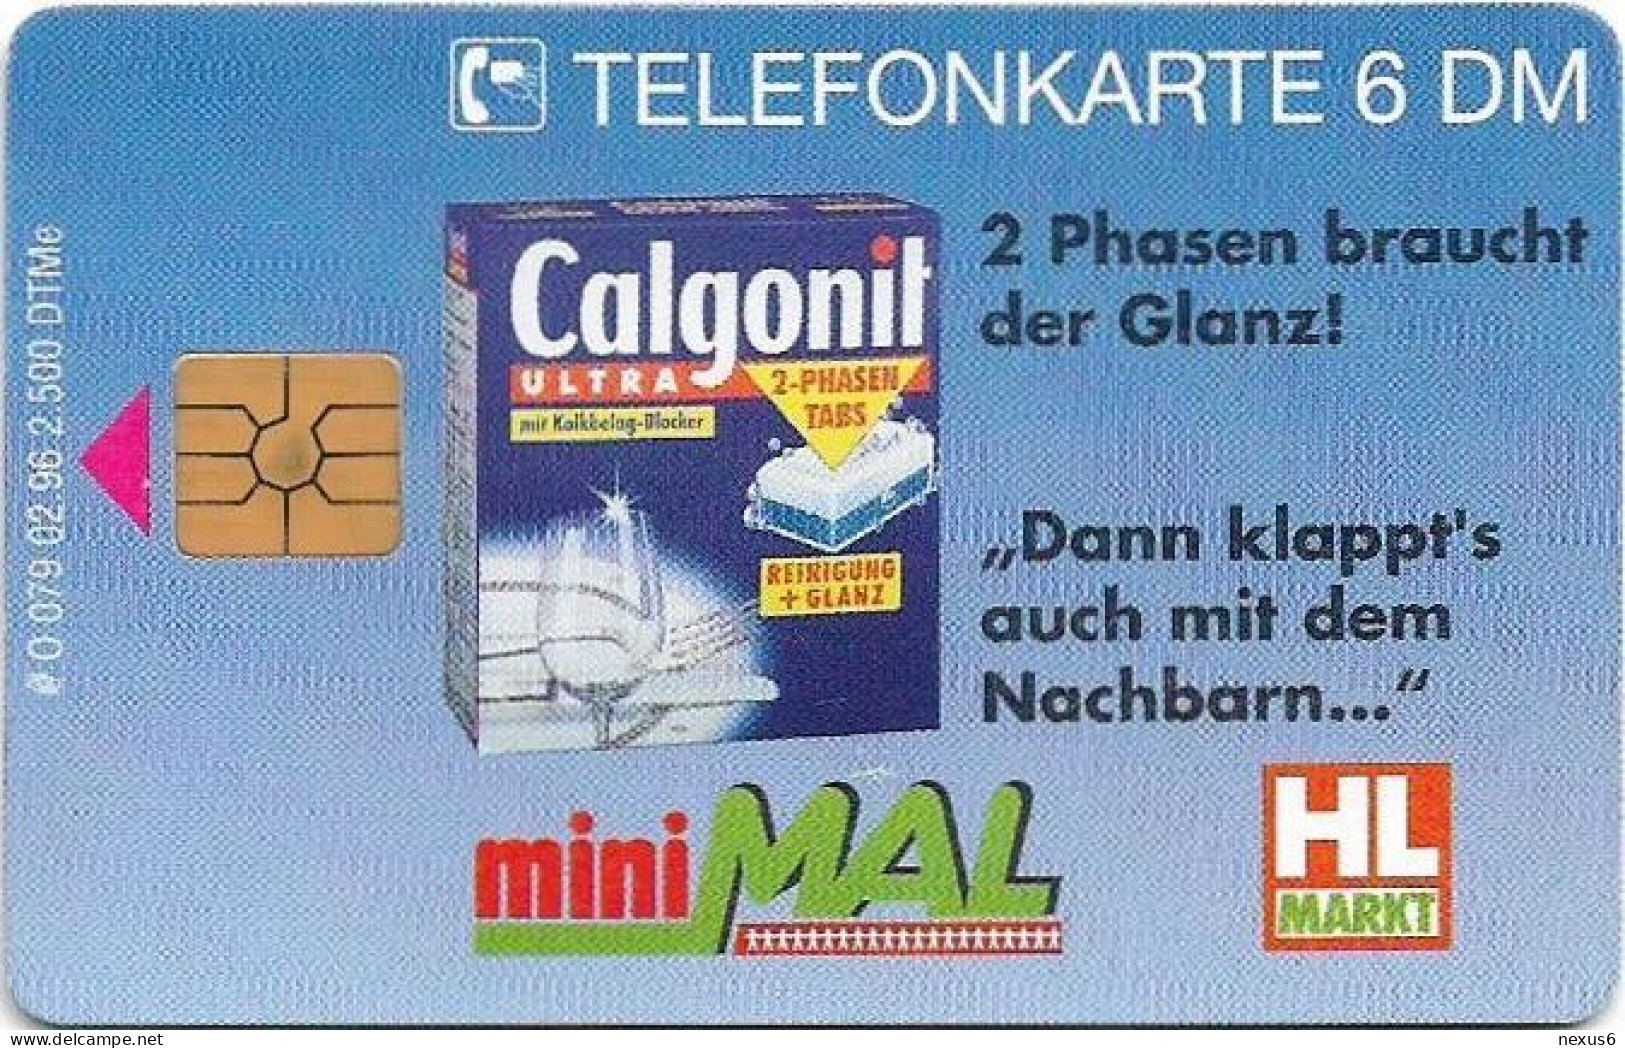 Germany - HL-Markt 2 - Calgonit - O 0079 - 02.1996, 6DM, 2.500ex, Used - O-Serie : Serie Clienti Esclusi Dal Servizio Delle Collezioni